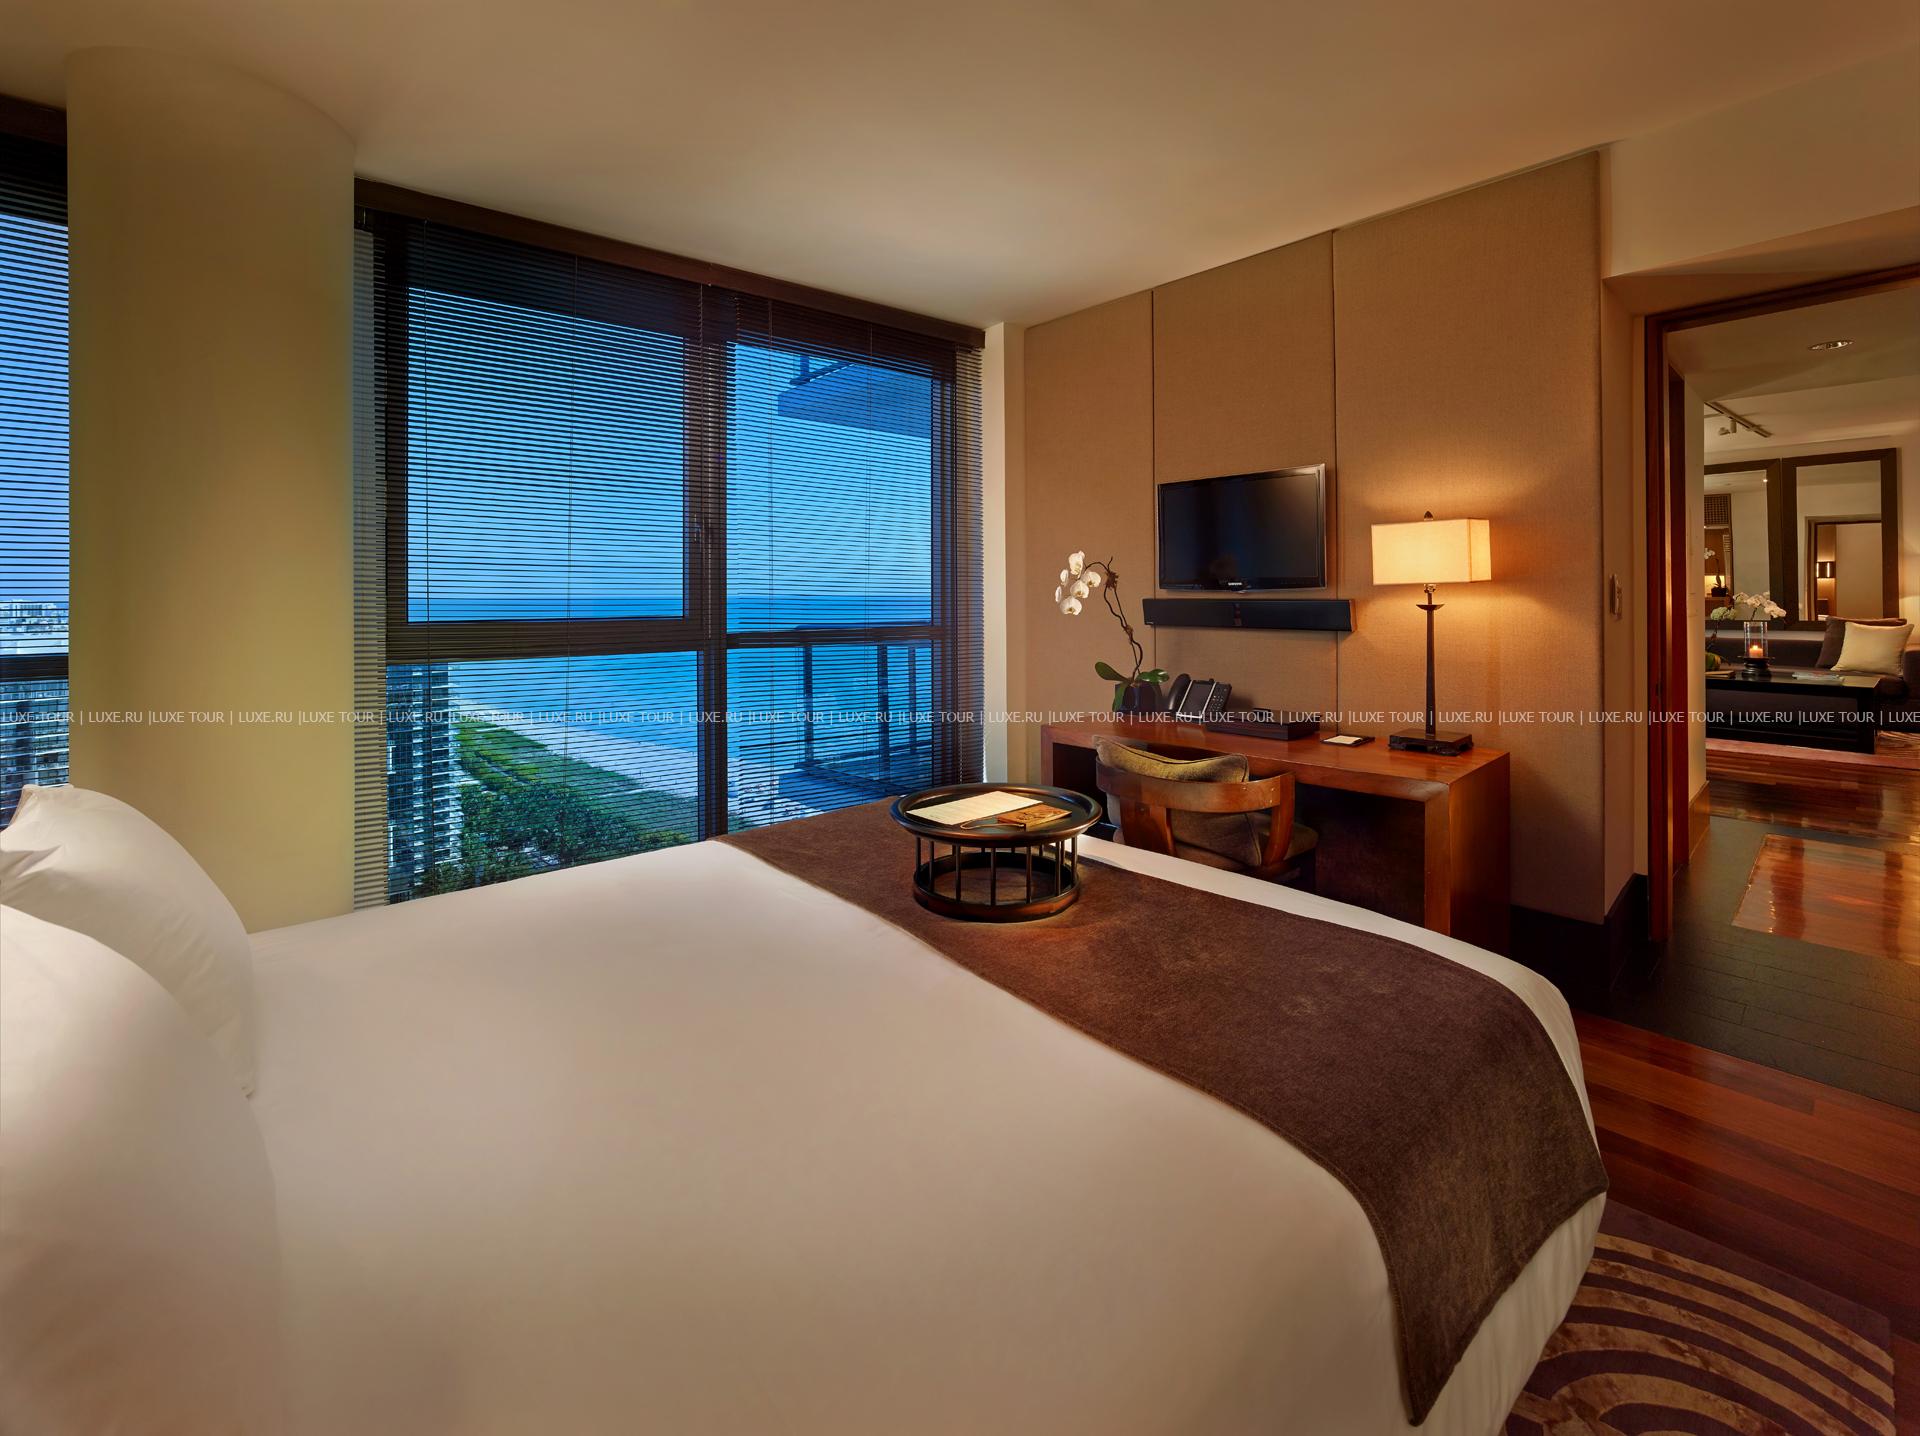 One bedroom suite. Отель Setai Майами. Отели в Майами номера. Спальня с видом на океан. Шикарные отели Майами.